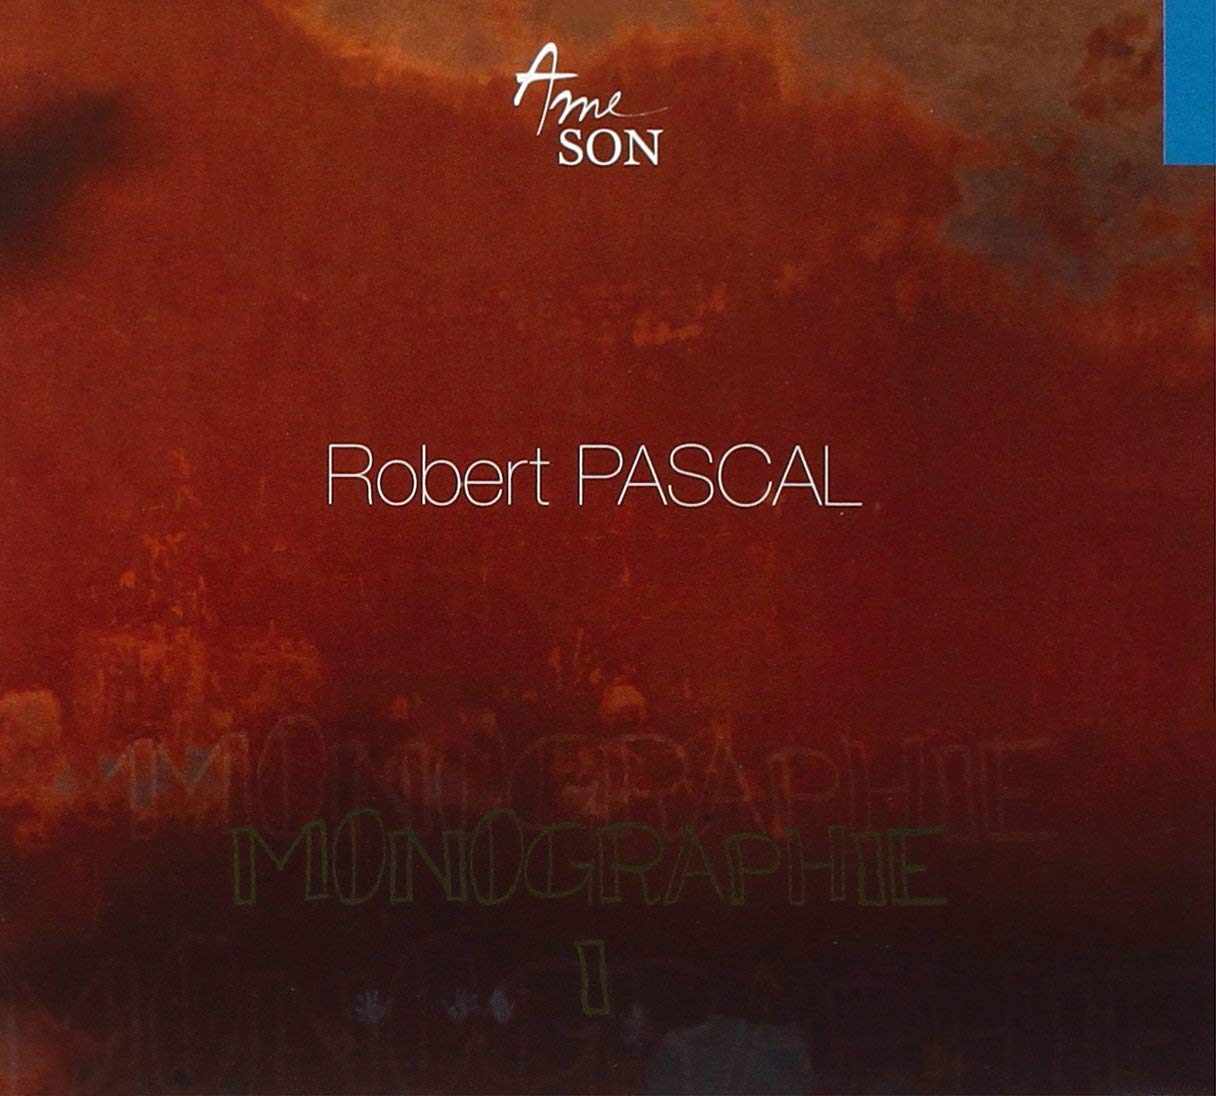 Robert Pascal - Monographie 1